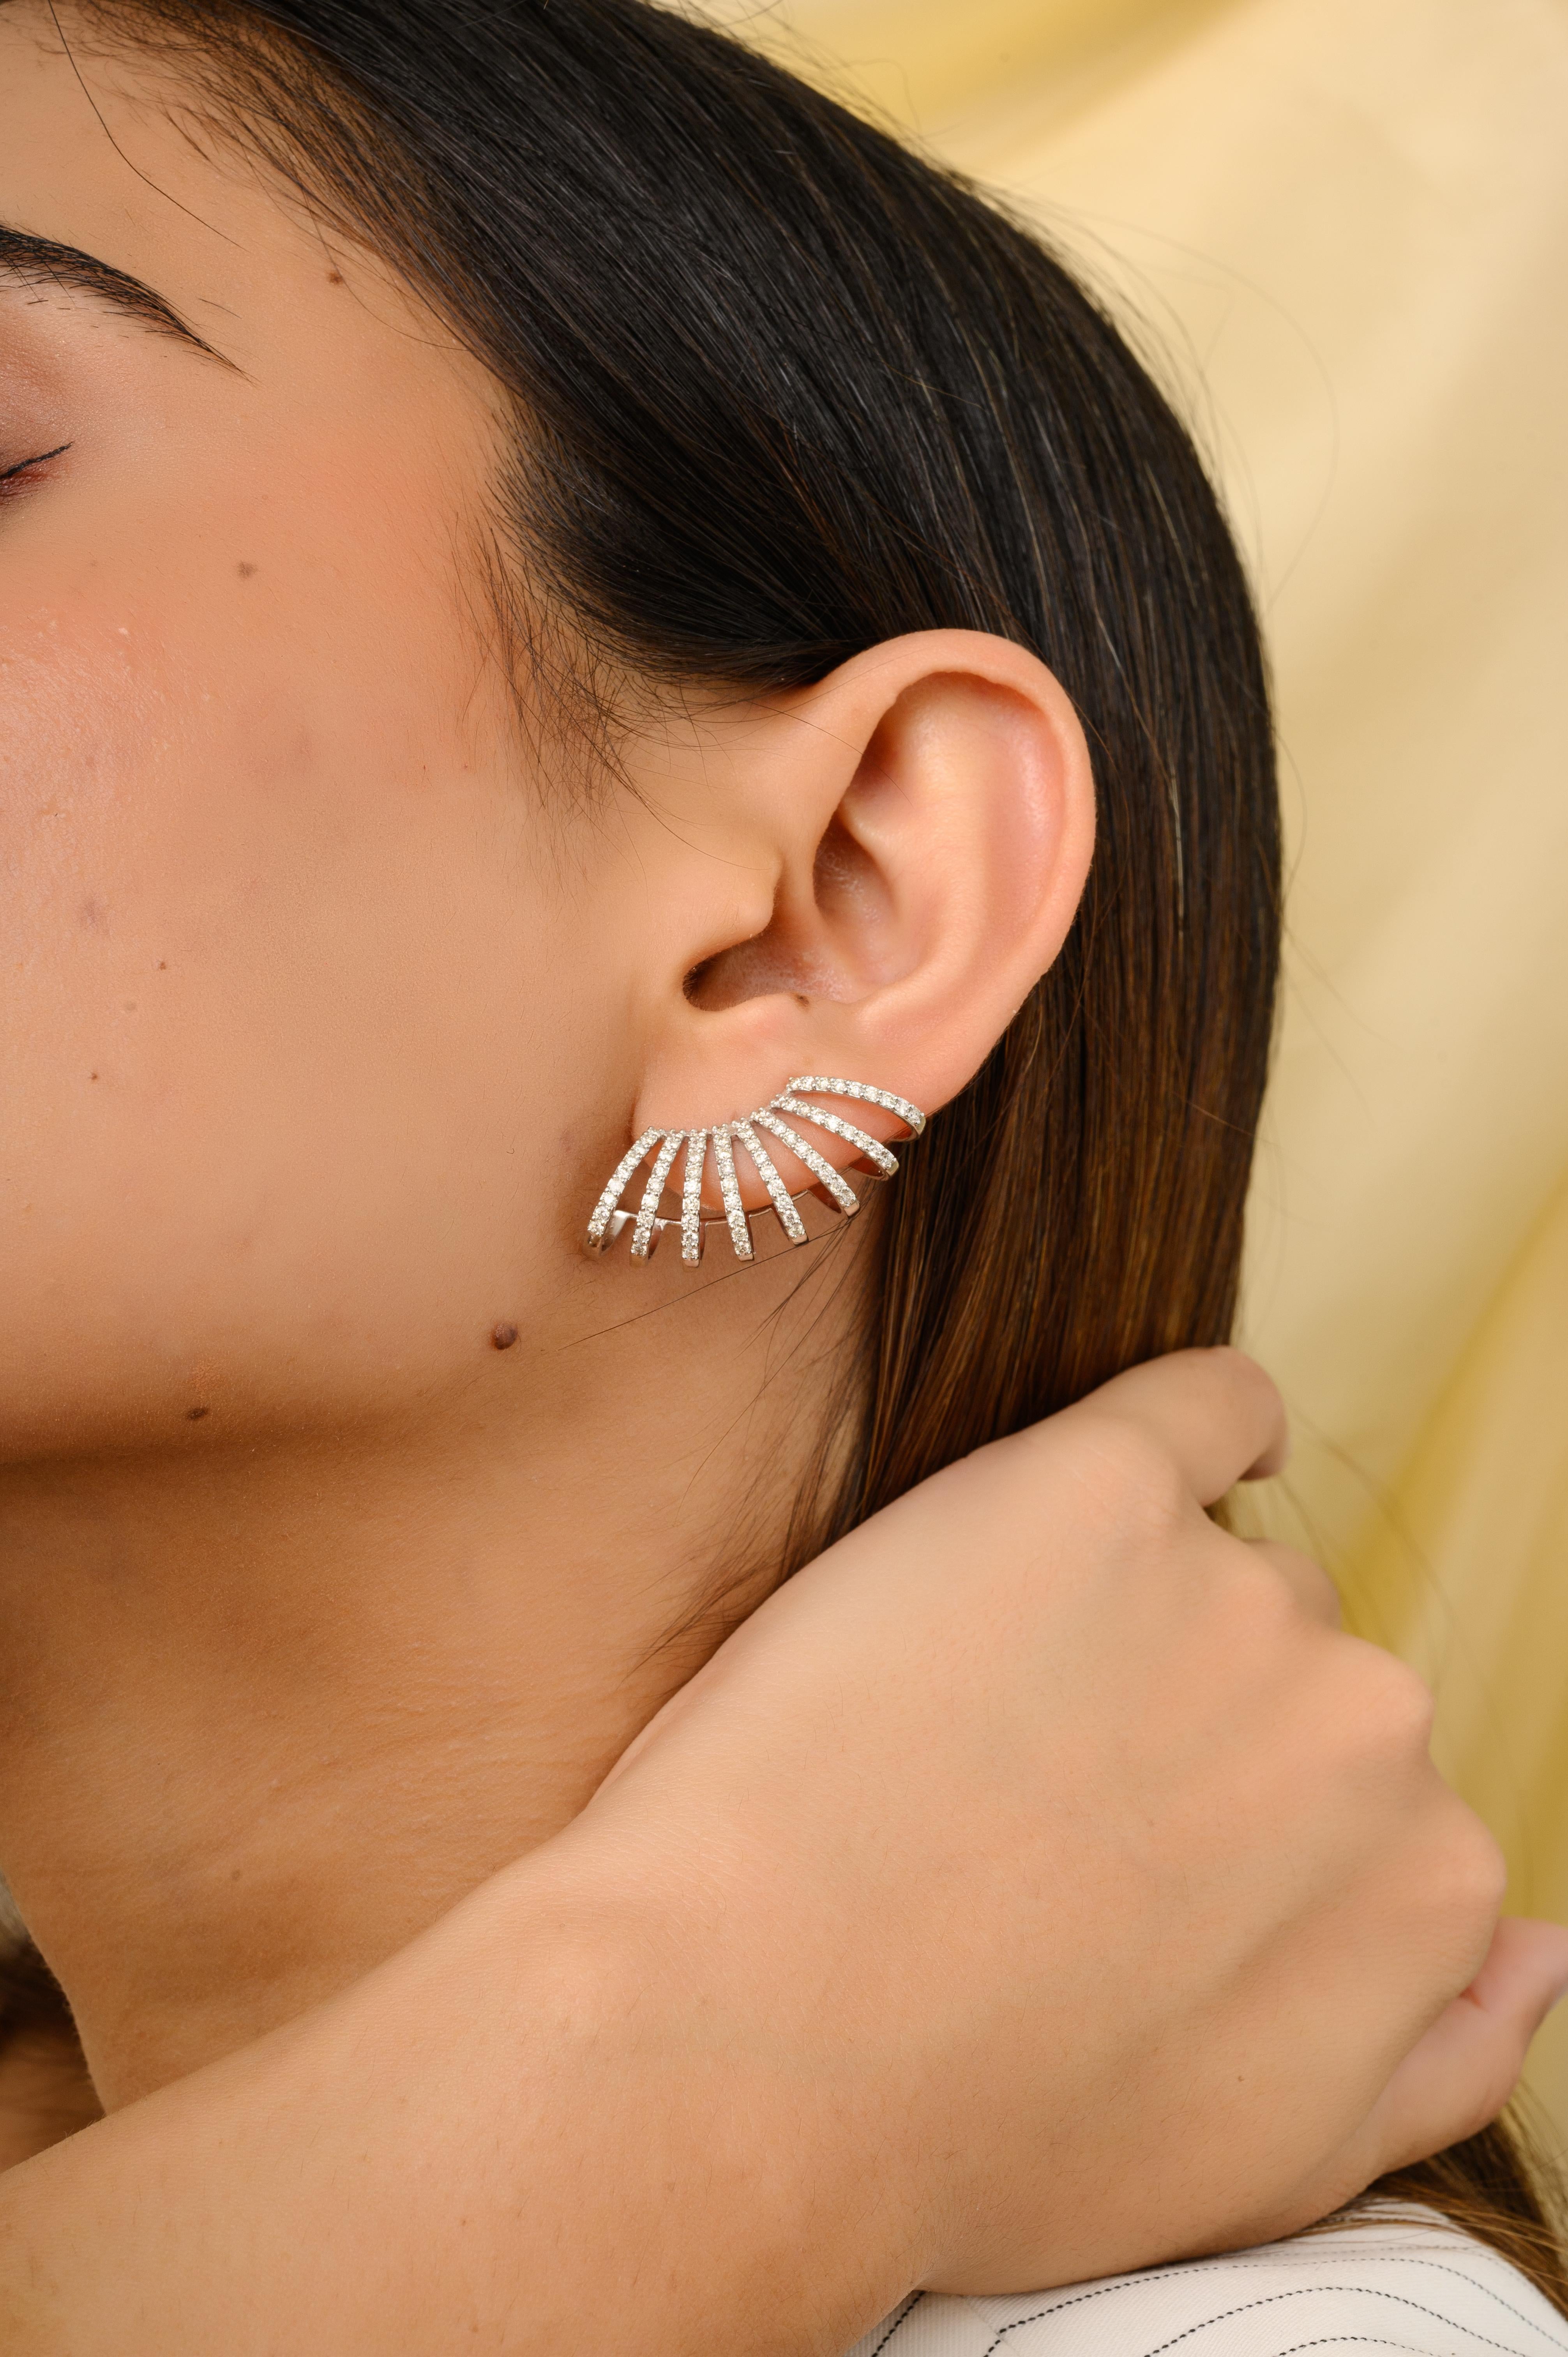 Achtreihige 1,32-Karat-Diamant-Cage-Ohrstecker aus 18-karätigem Gold, um Ihren Look zu unterstreichen. Sie brauchen Ohrstecker, um mit Ihrem Look ein Statement zu setzen. Diese Ohrringe sorgen für einen funkelnden, luxuriösen Look mit Diamanten im